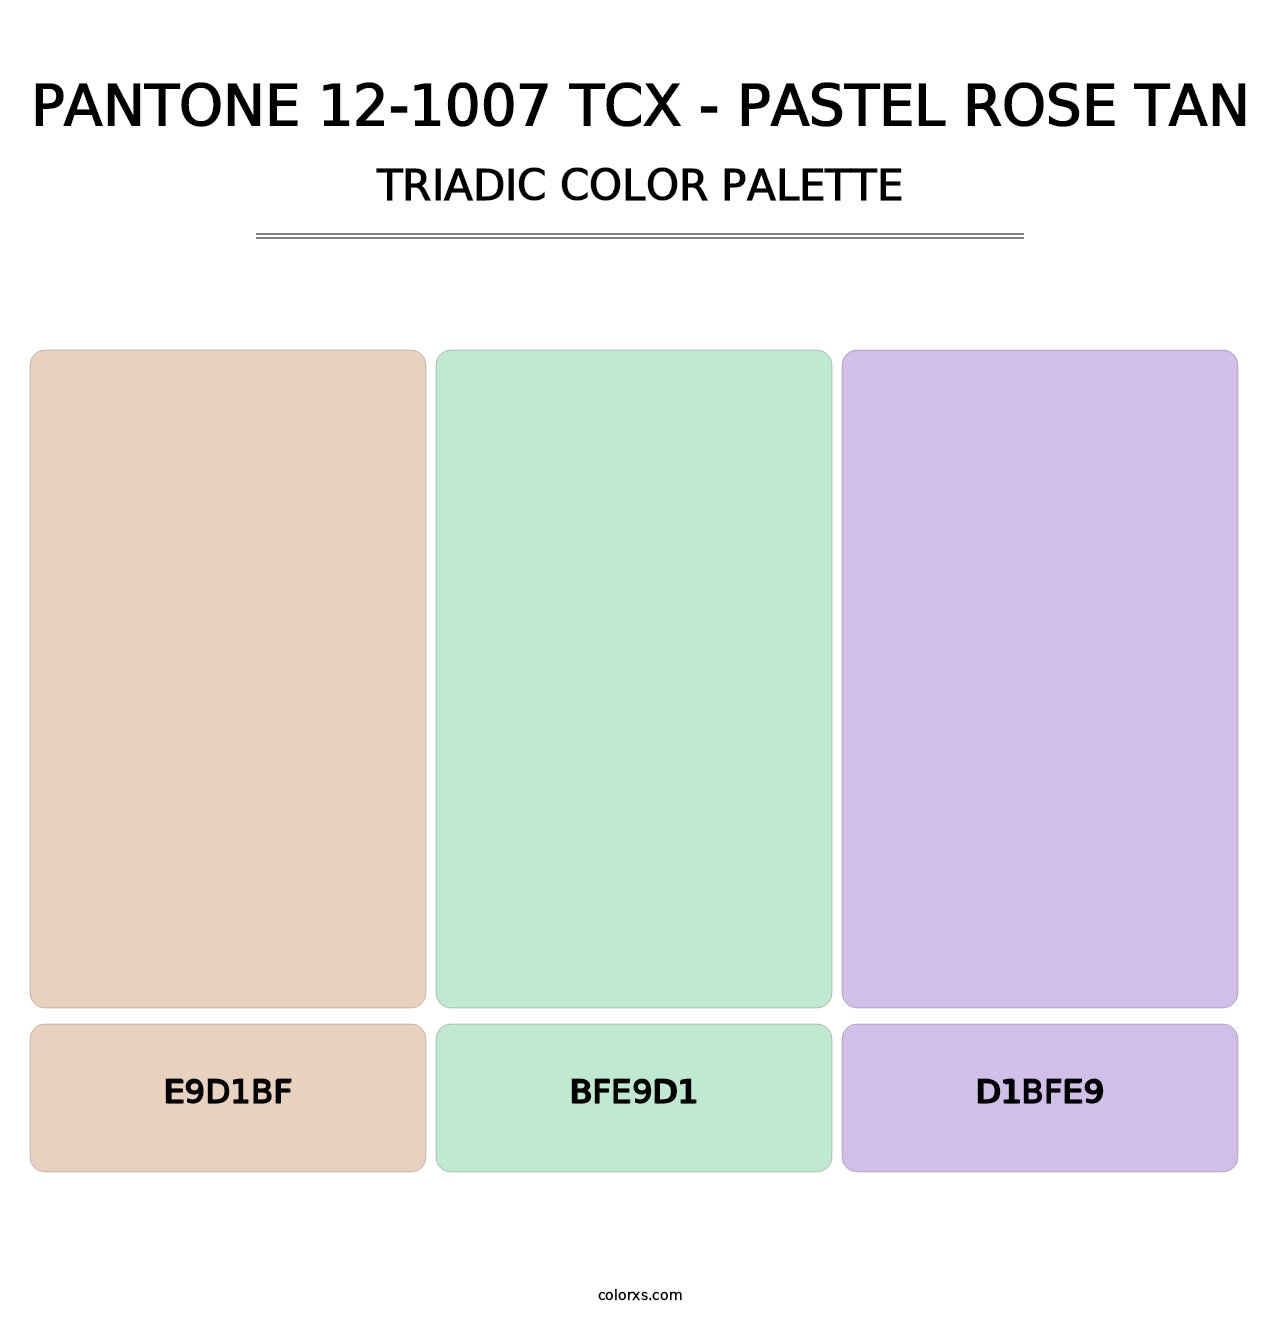 PANTONE 12-1007 TCX - Pastel Rose Tan - Triadic Color Palette